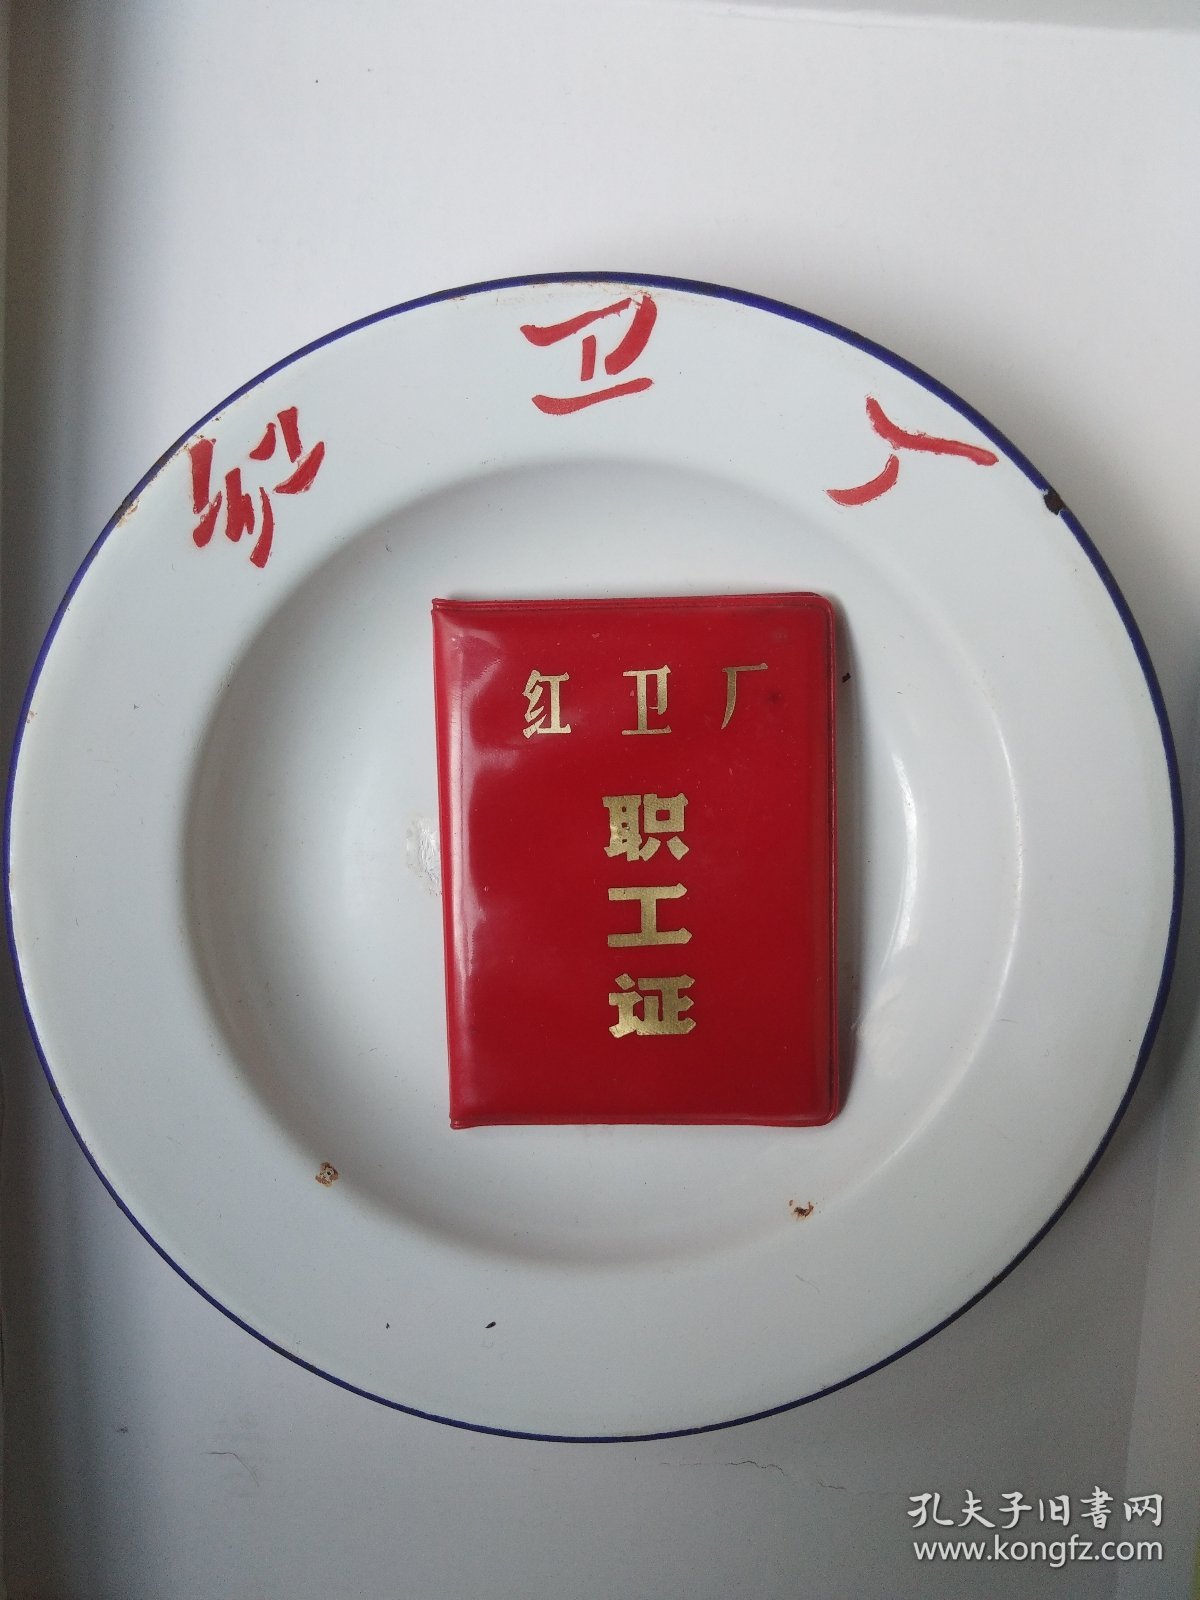 1967年红卫厂(二汽)搪瓷餐盘(不包括职工证)